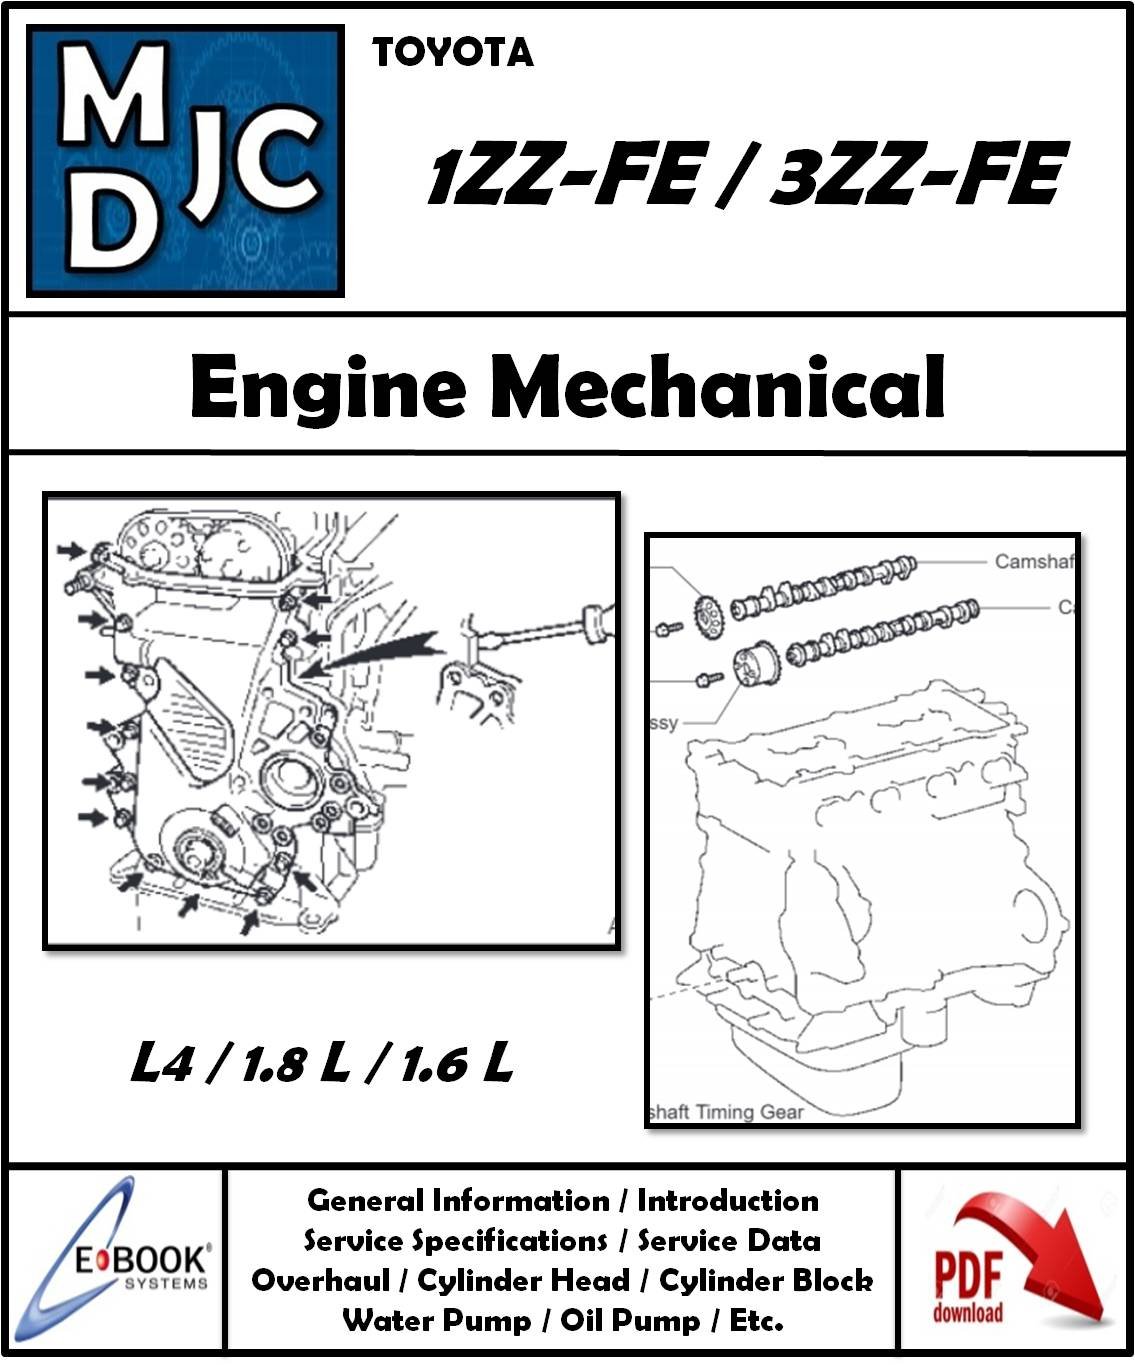 Manual de Taller (Reparación Mecánica) Motor Toyota 1ZZ-FE / 3ZZ-FE